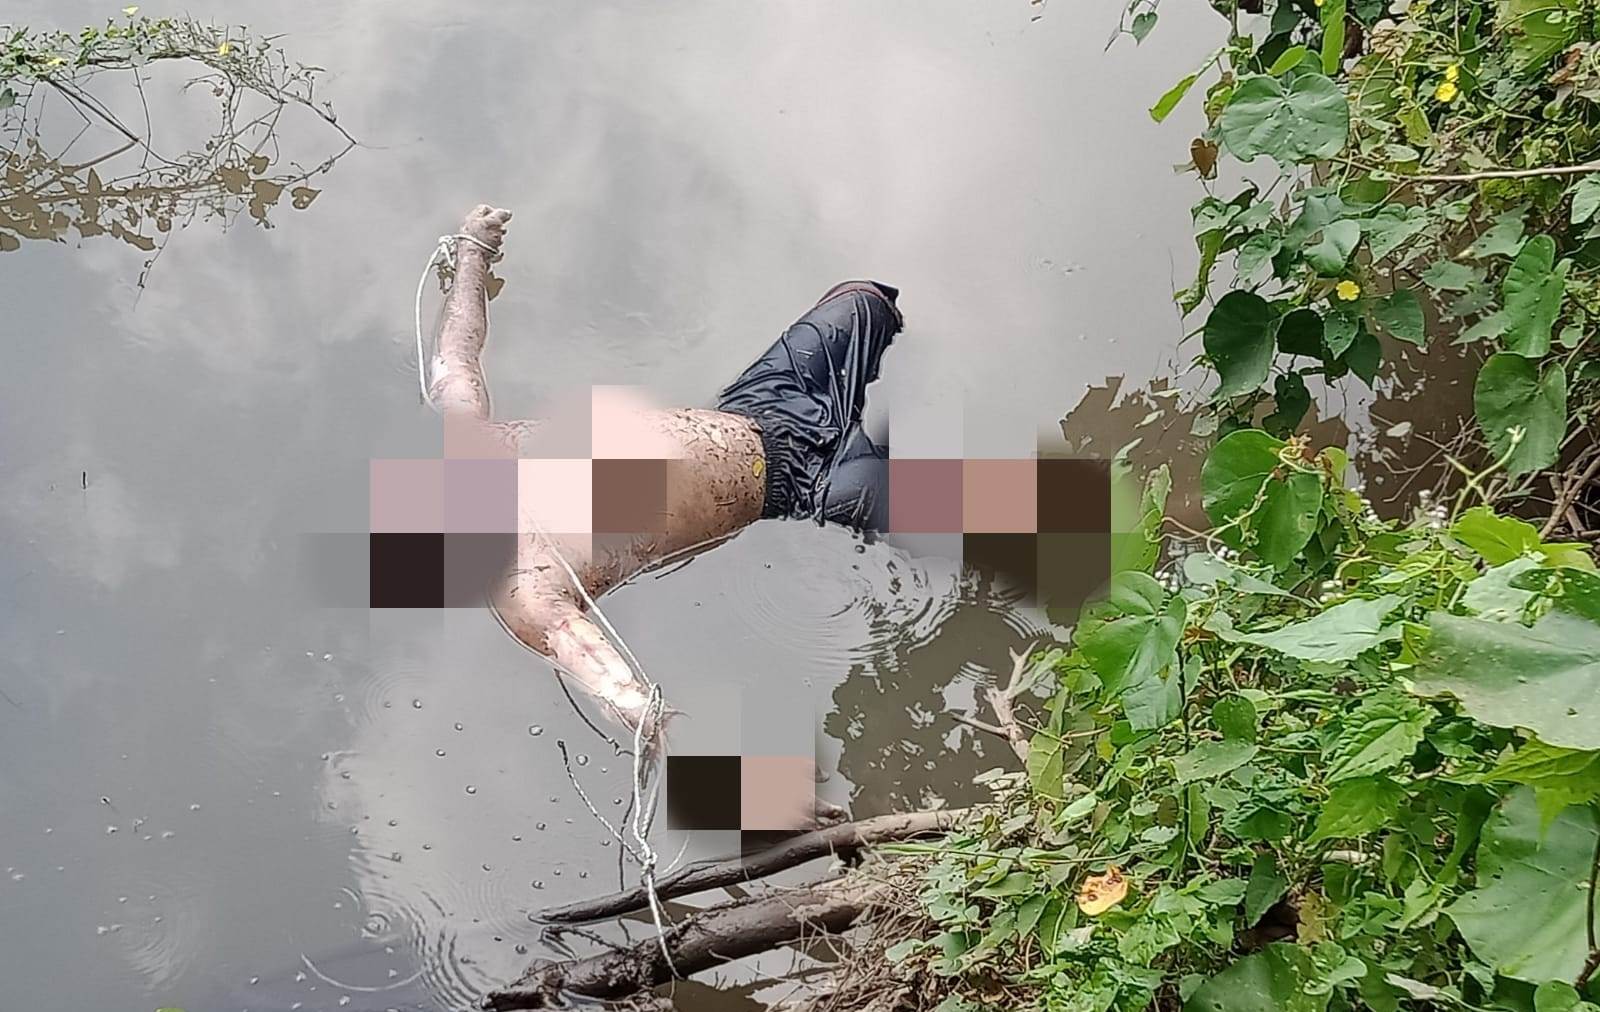 Mayat Tanpa Identitas Mengambang di Sungai Bondoyudo Lumajang